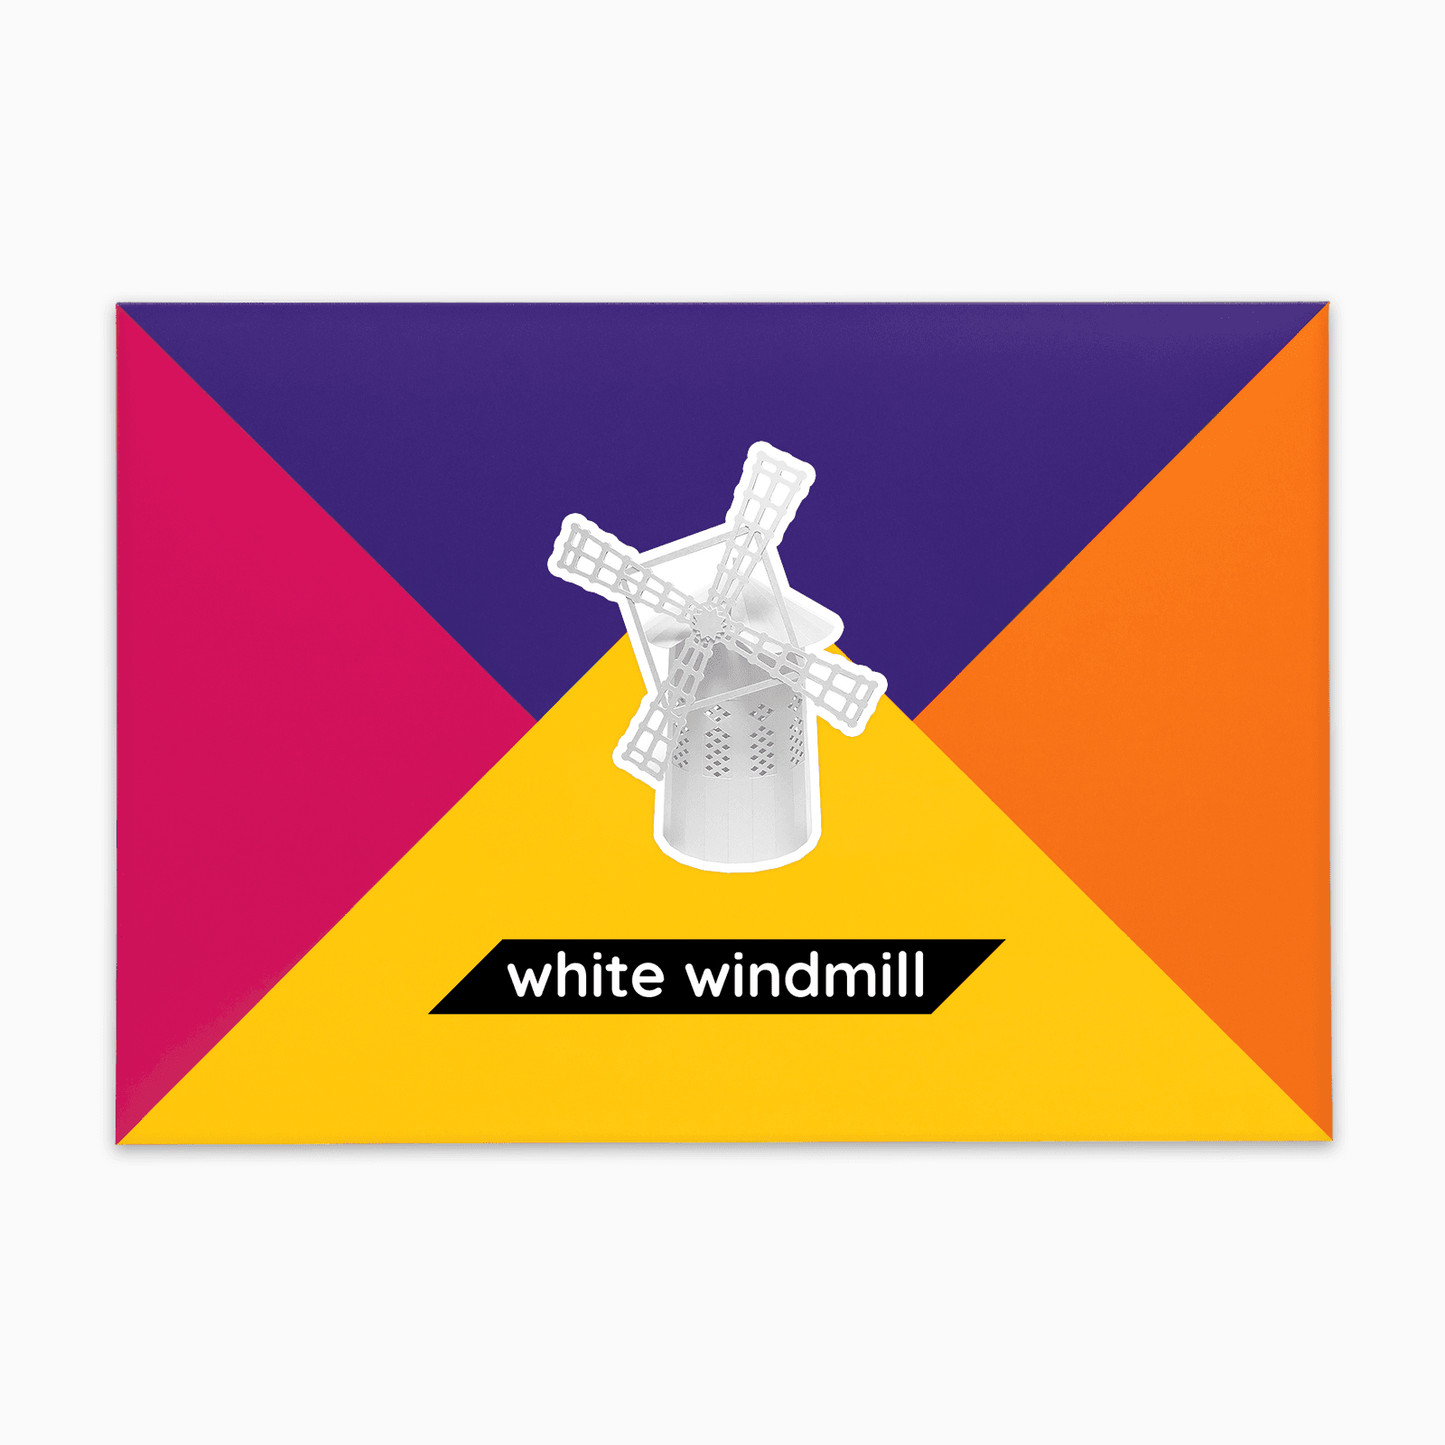 PaperLandmarks White Windmill Paper Model Kit Gift Packaging